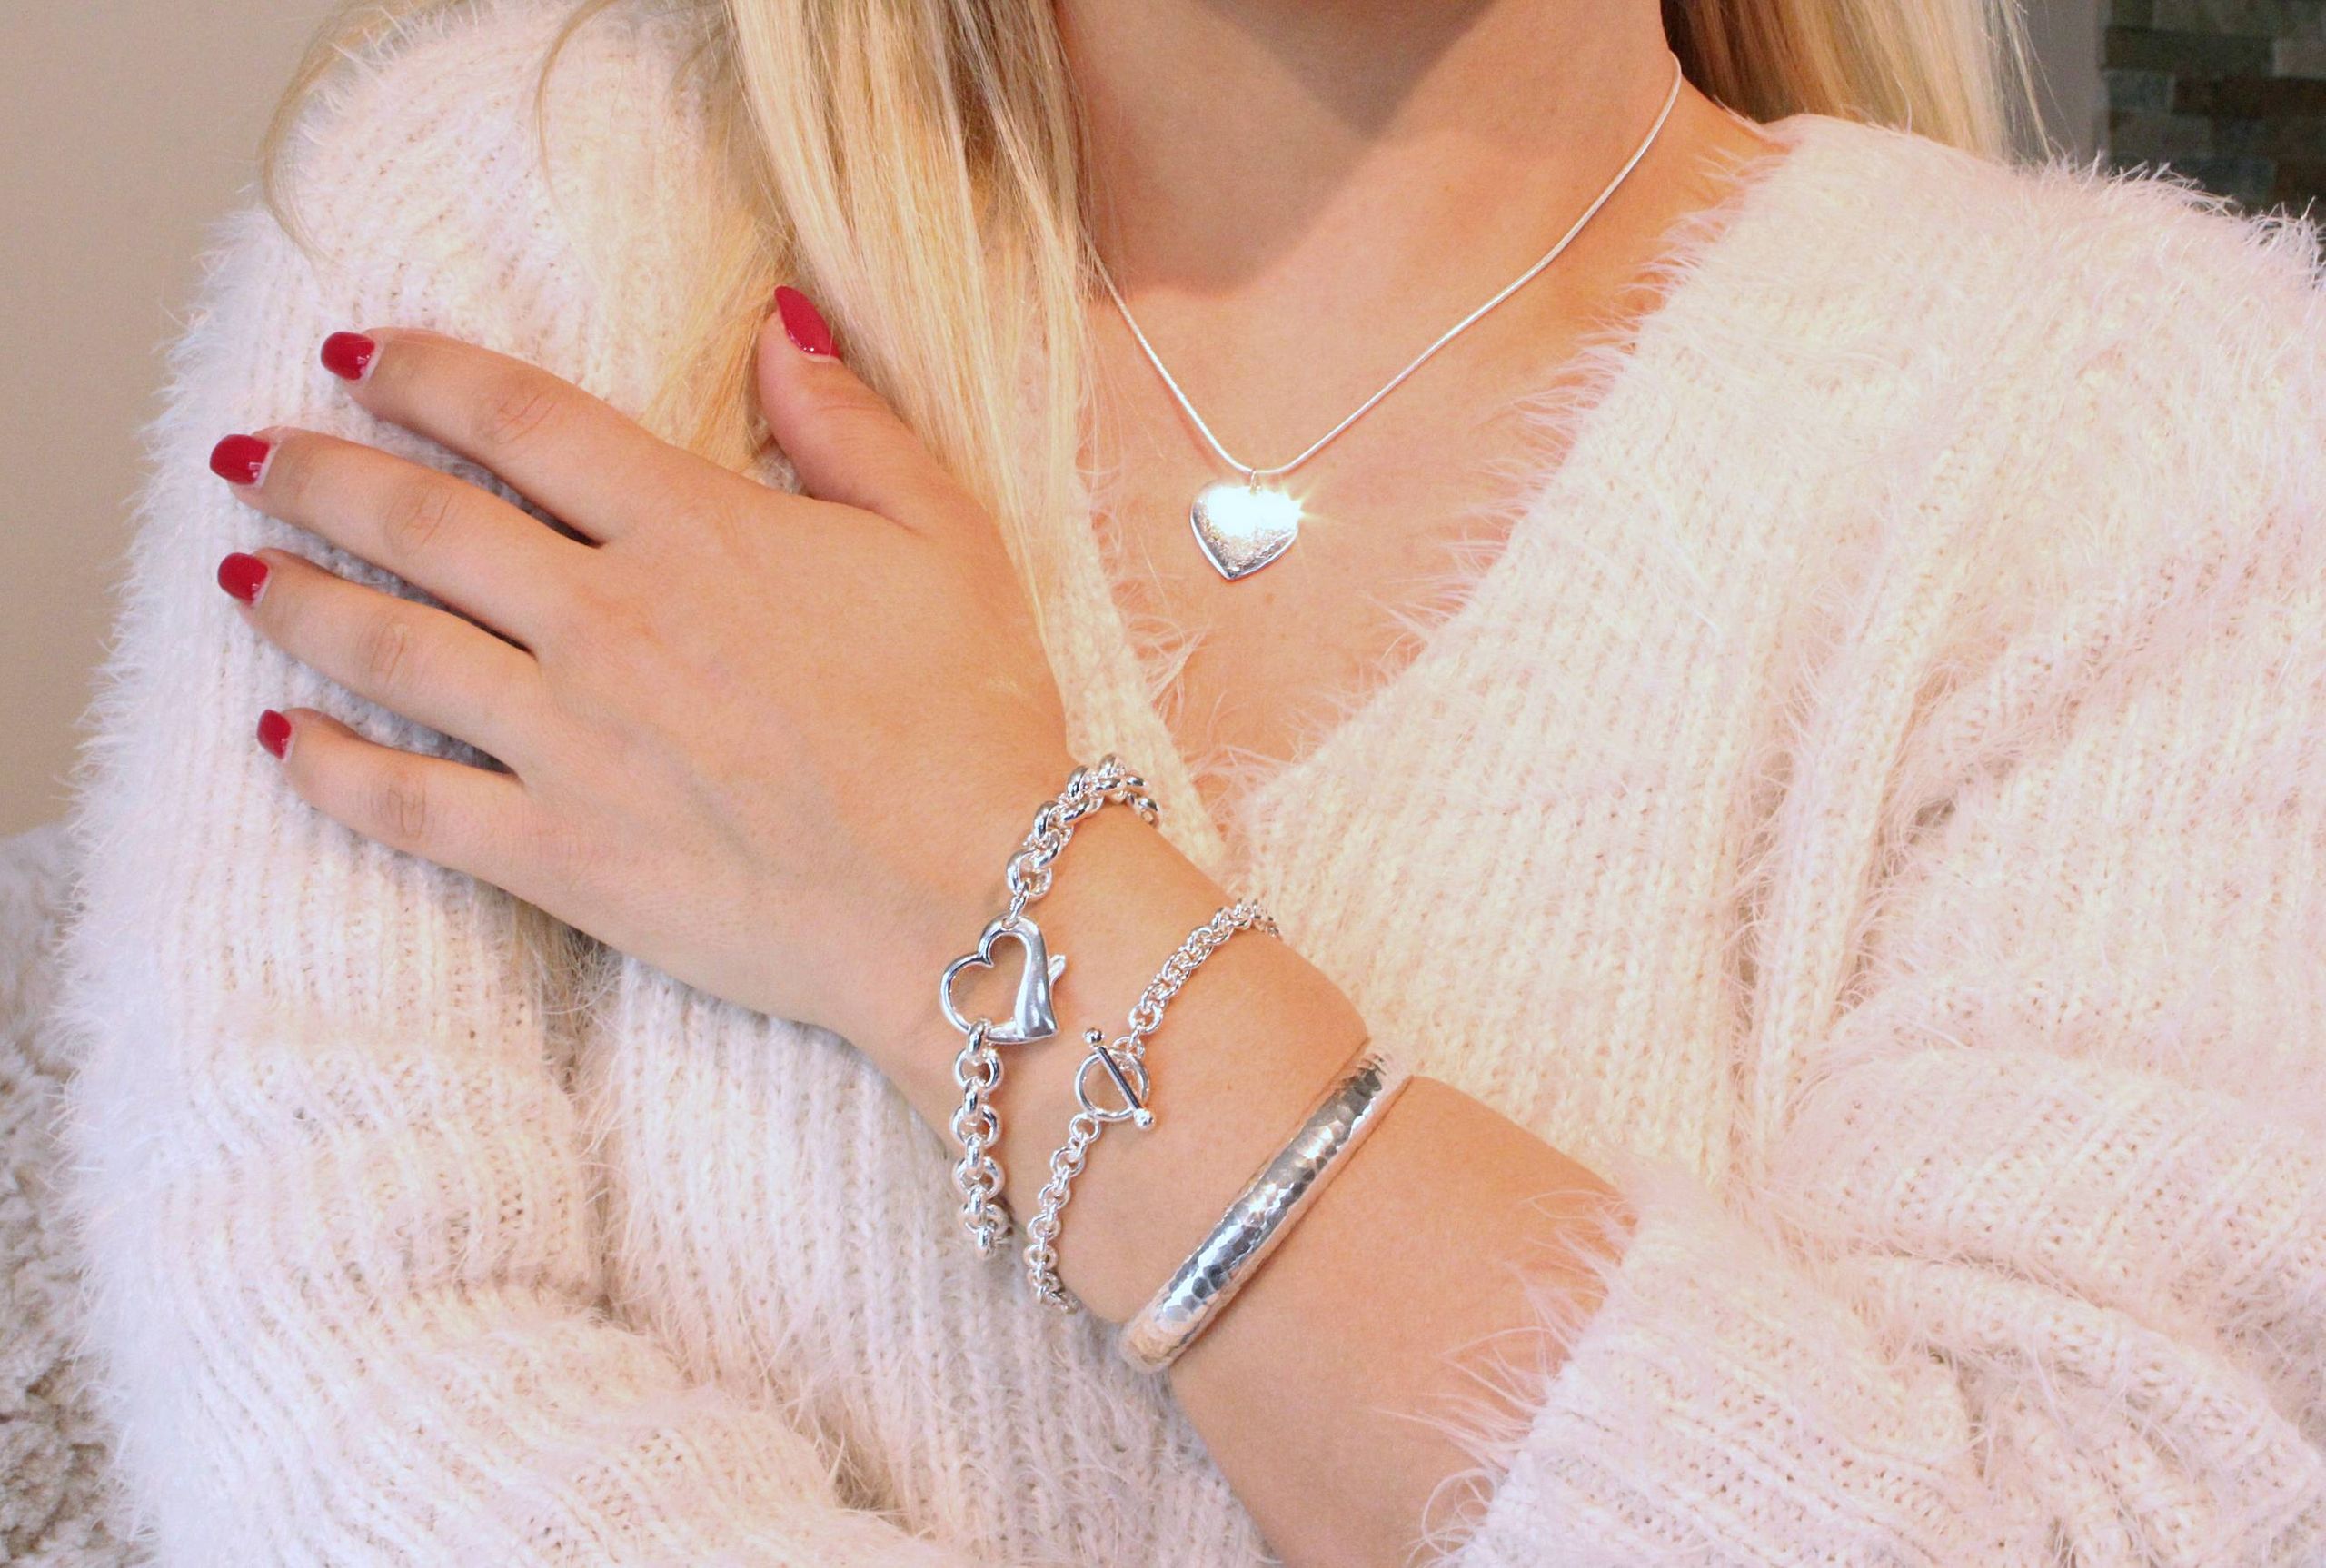 Ein massives Herzarmband aus Silber für Damen mit einem dekorativen Herz als Verschluss, getragen am Handgelenk einer Dame.